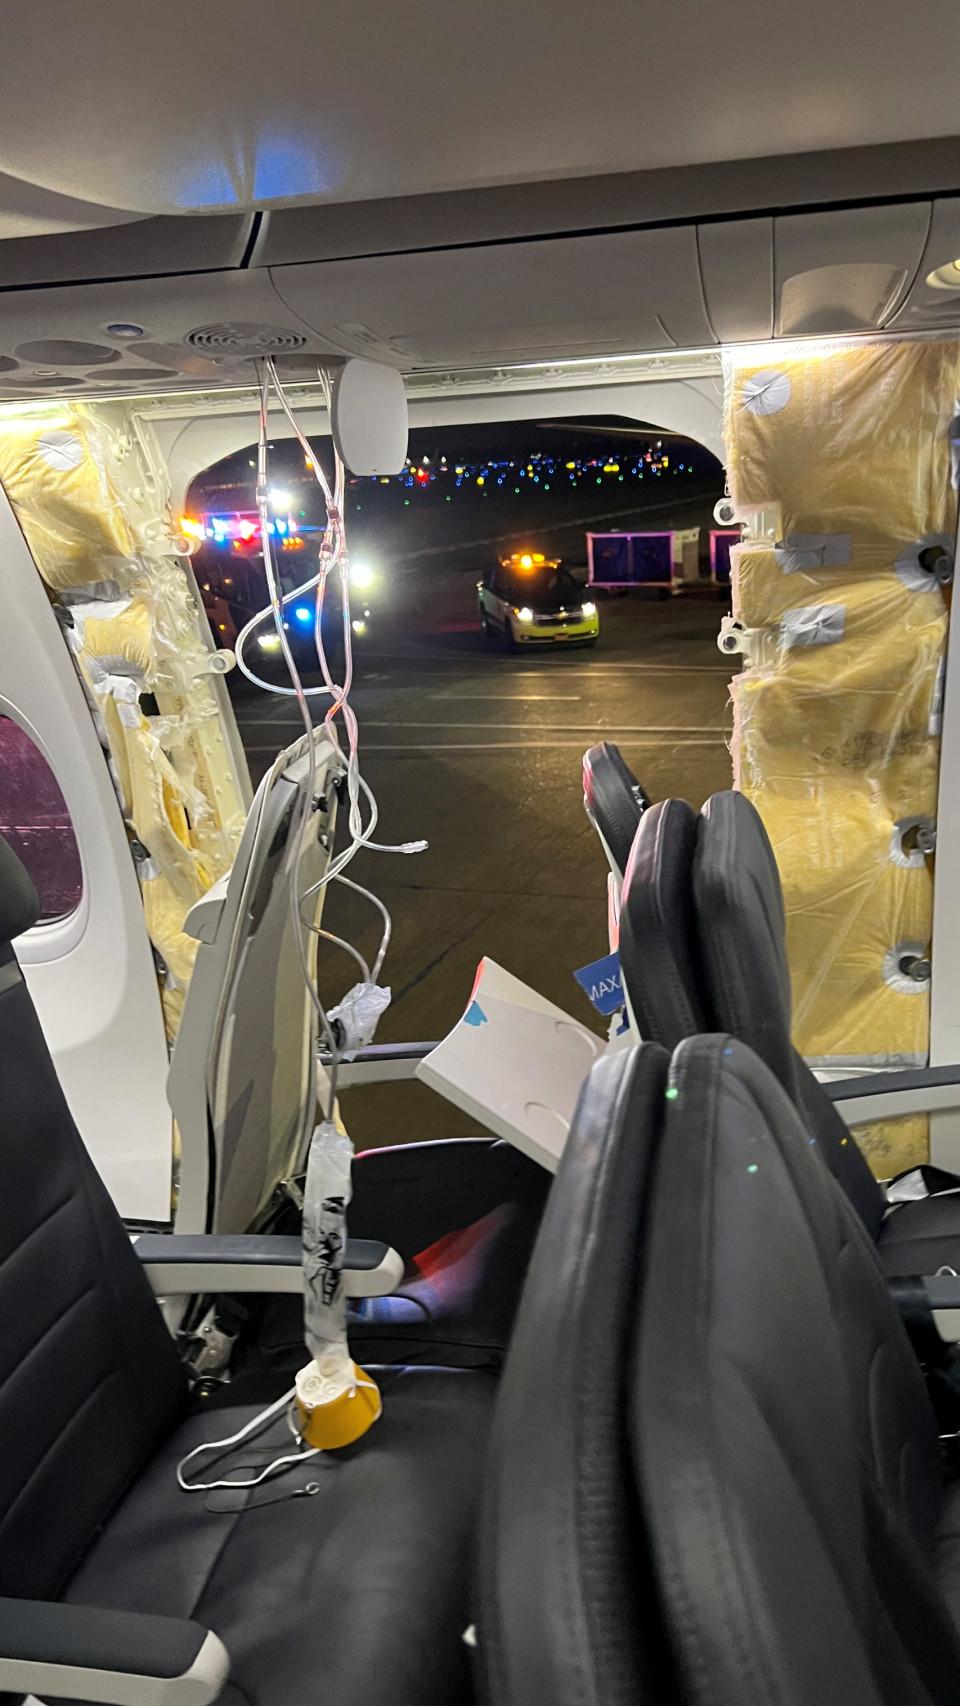 Hueco dejado por la puerta de emergencia tras desprenderse en pleno vuelo